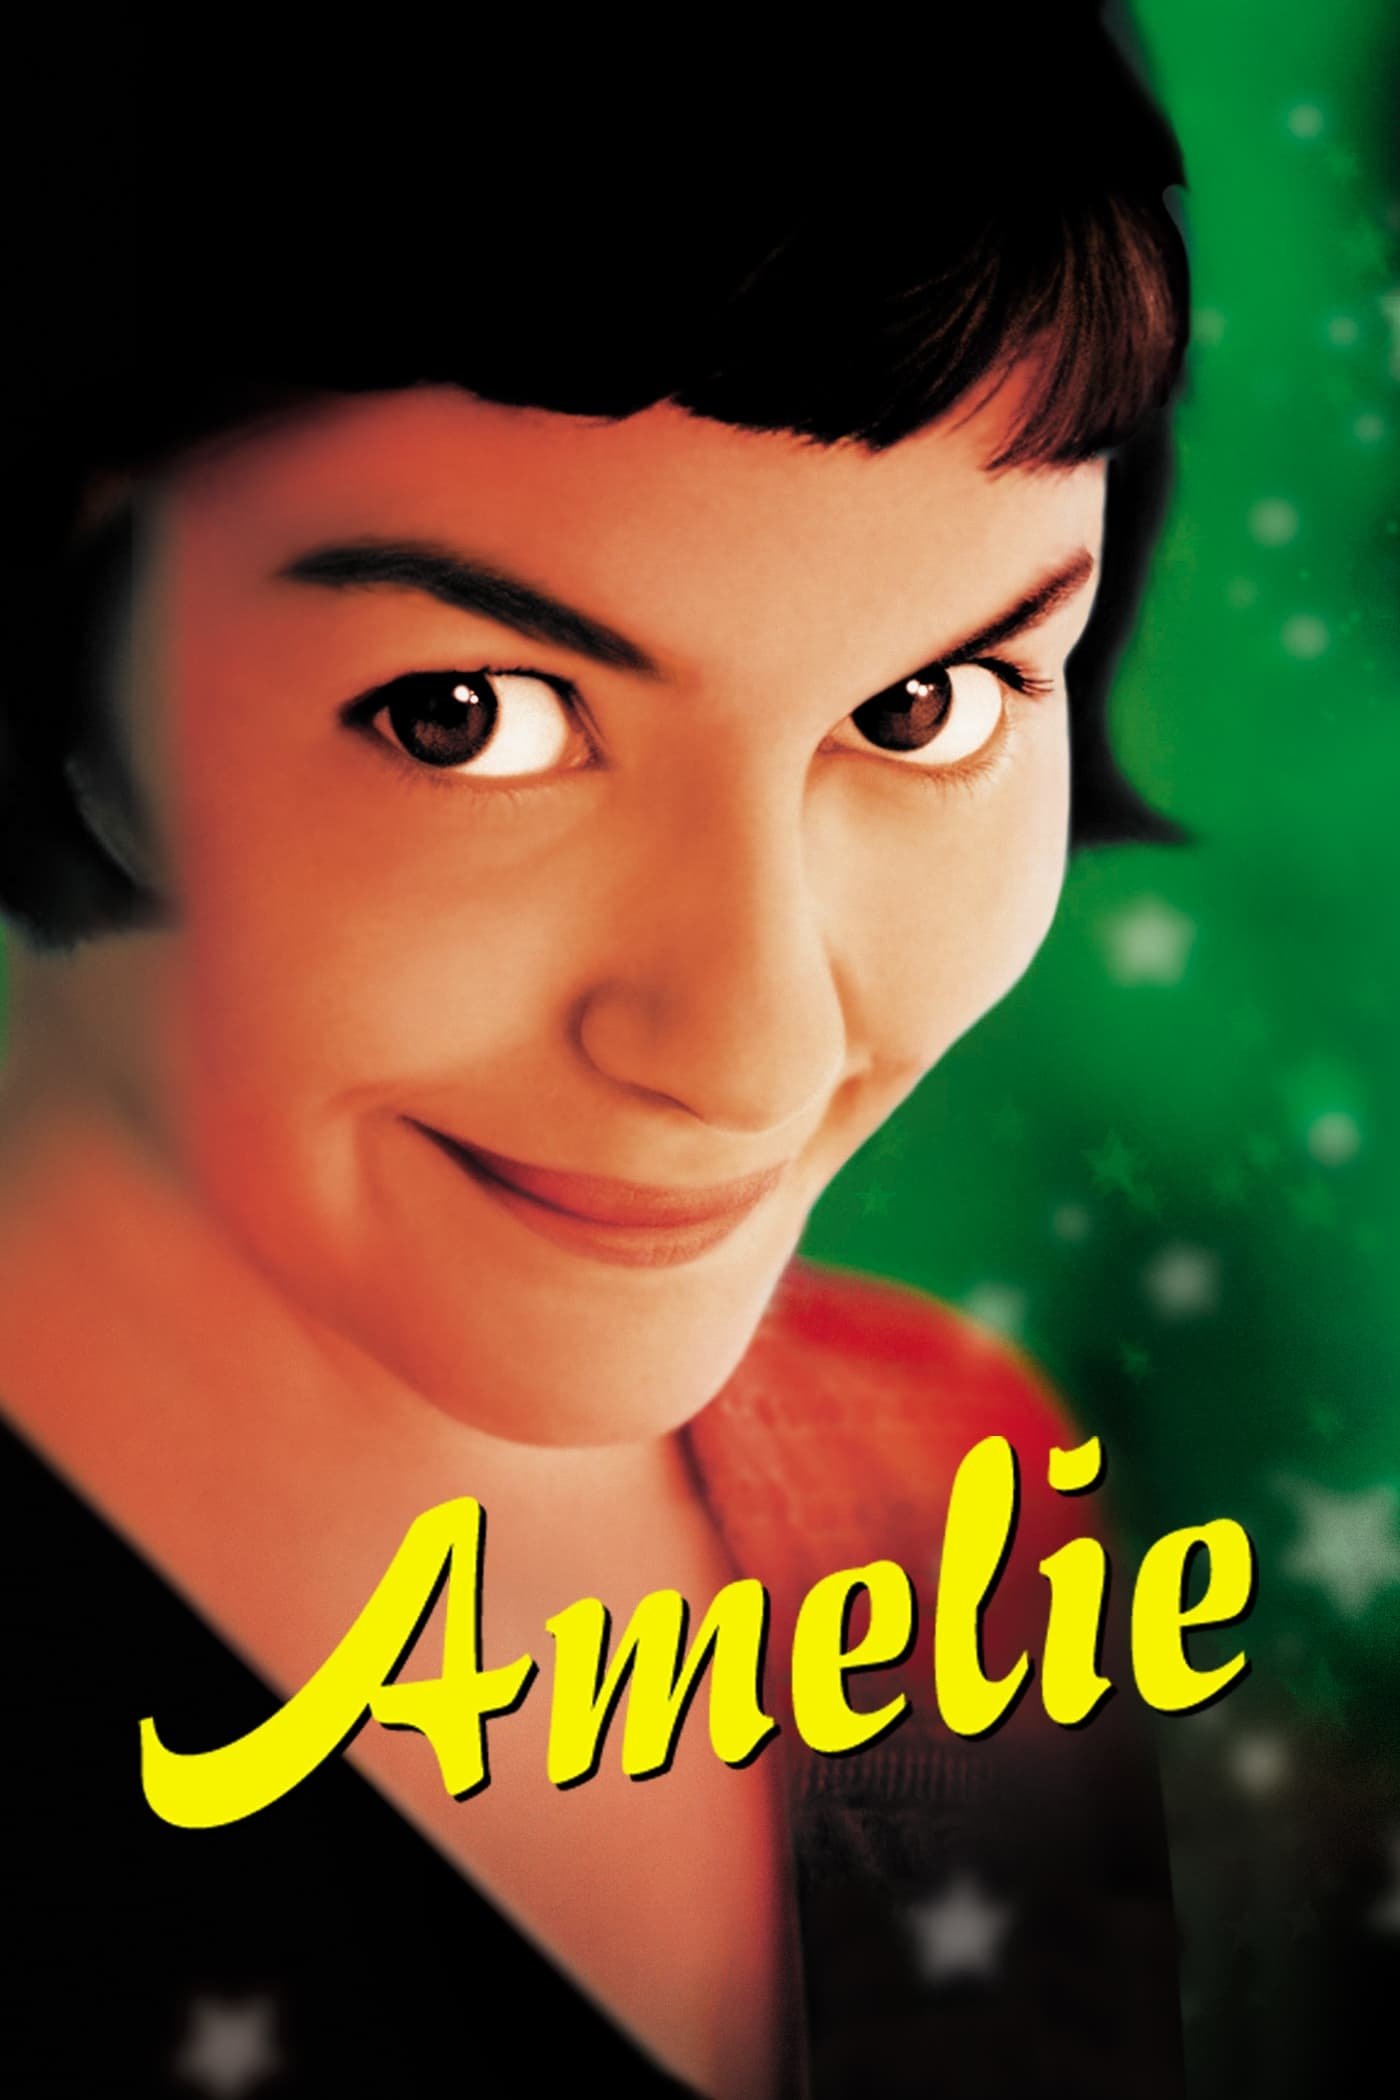 amelie pronunciation